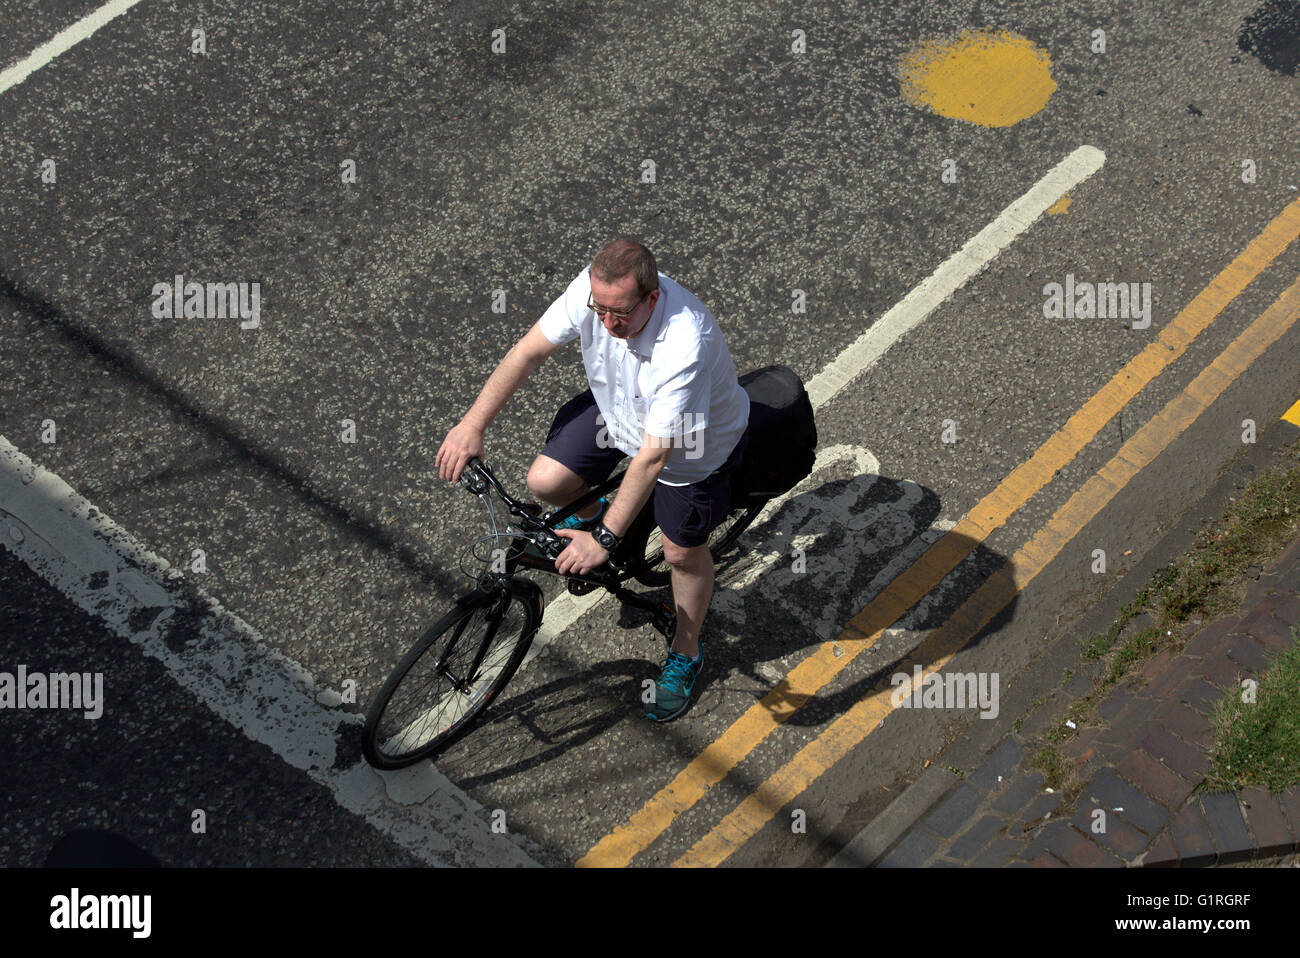 Mann mittleren Alters Radfahrer Fahrrad warten an eine Stadt Ecke Ampel warte gesehen von oben, Glasgow, Schottland, Großbritannien Stockfoto